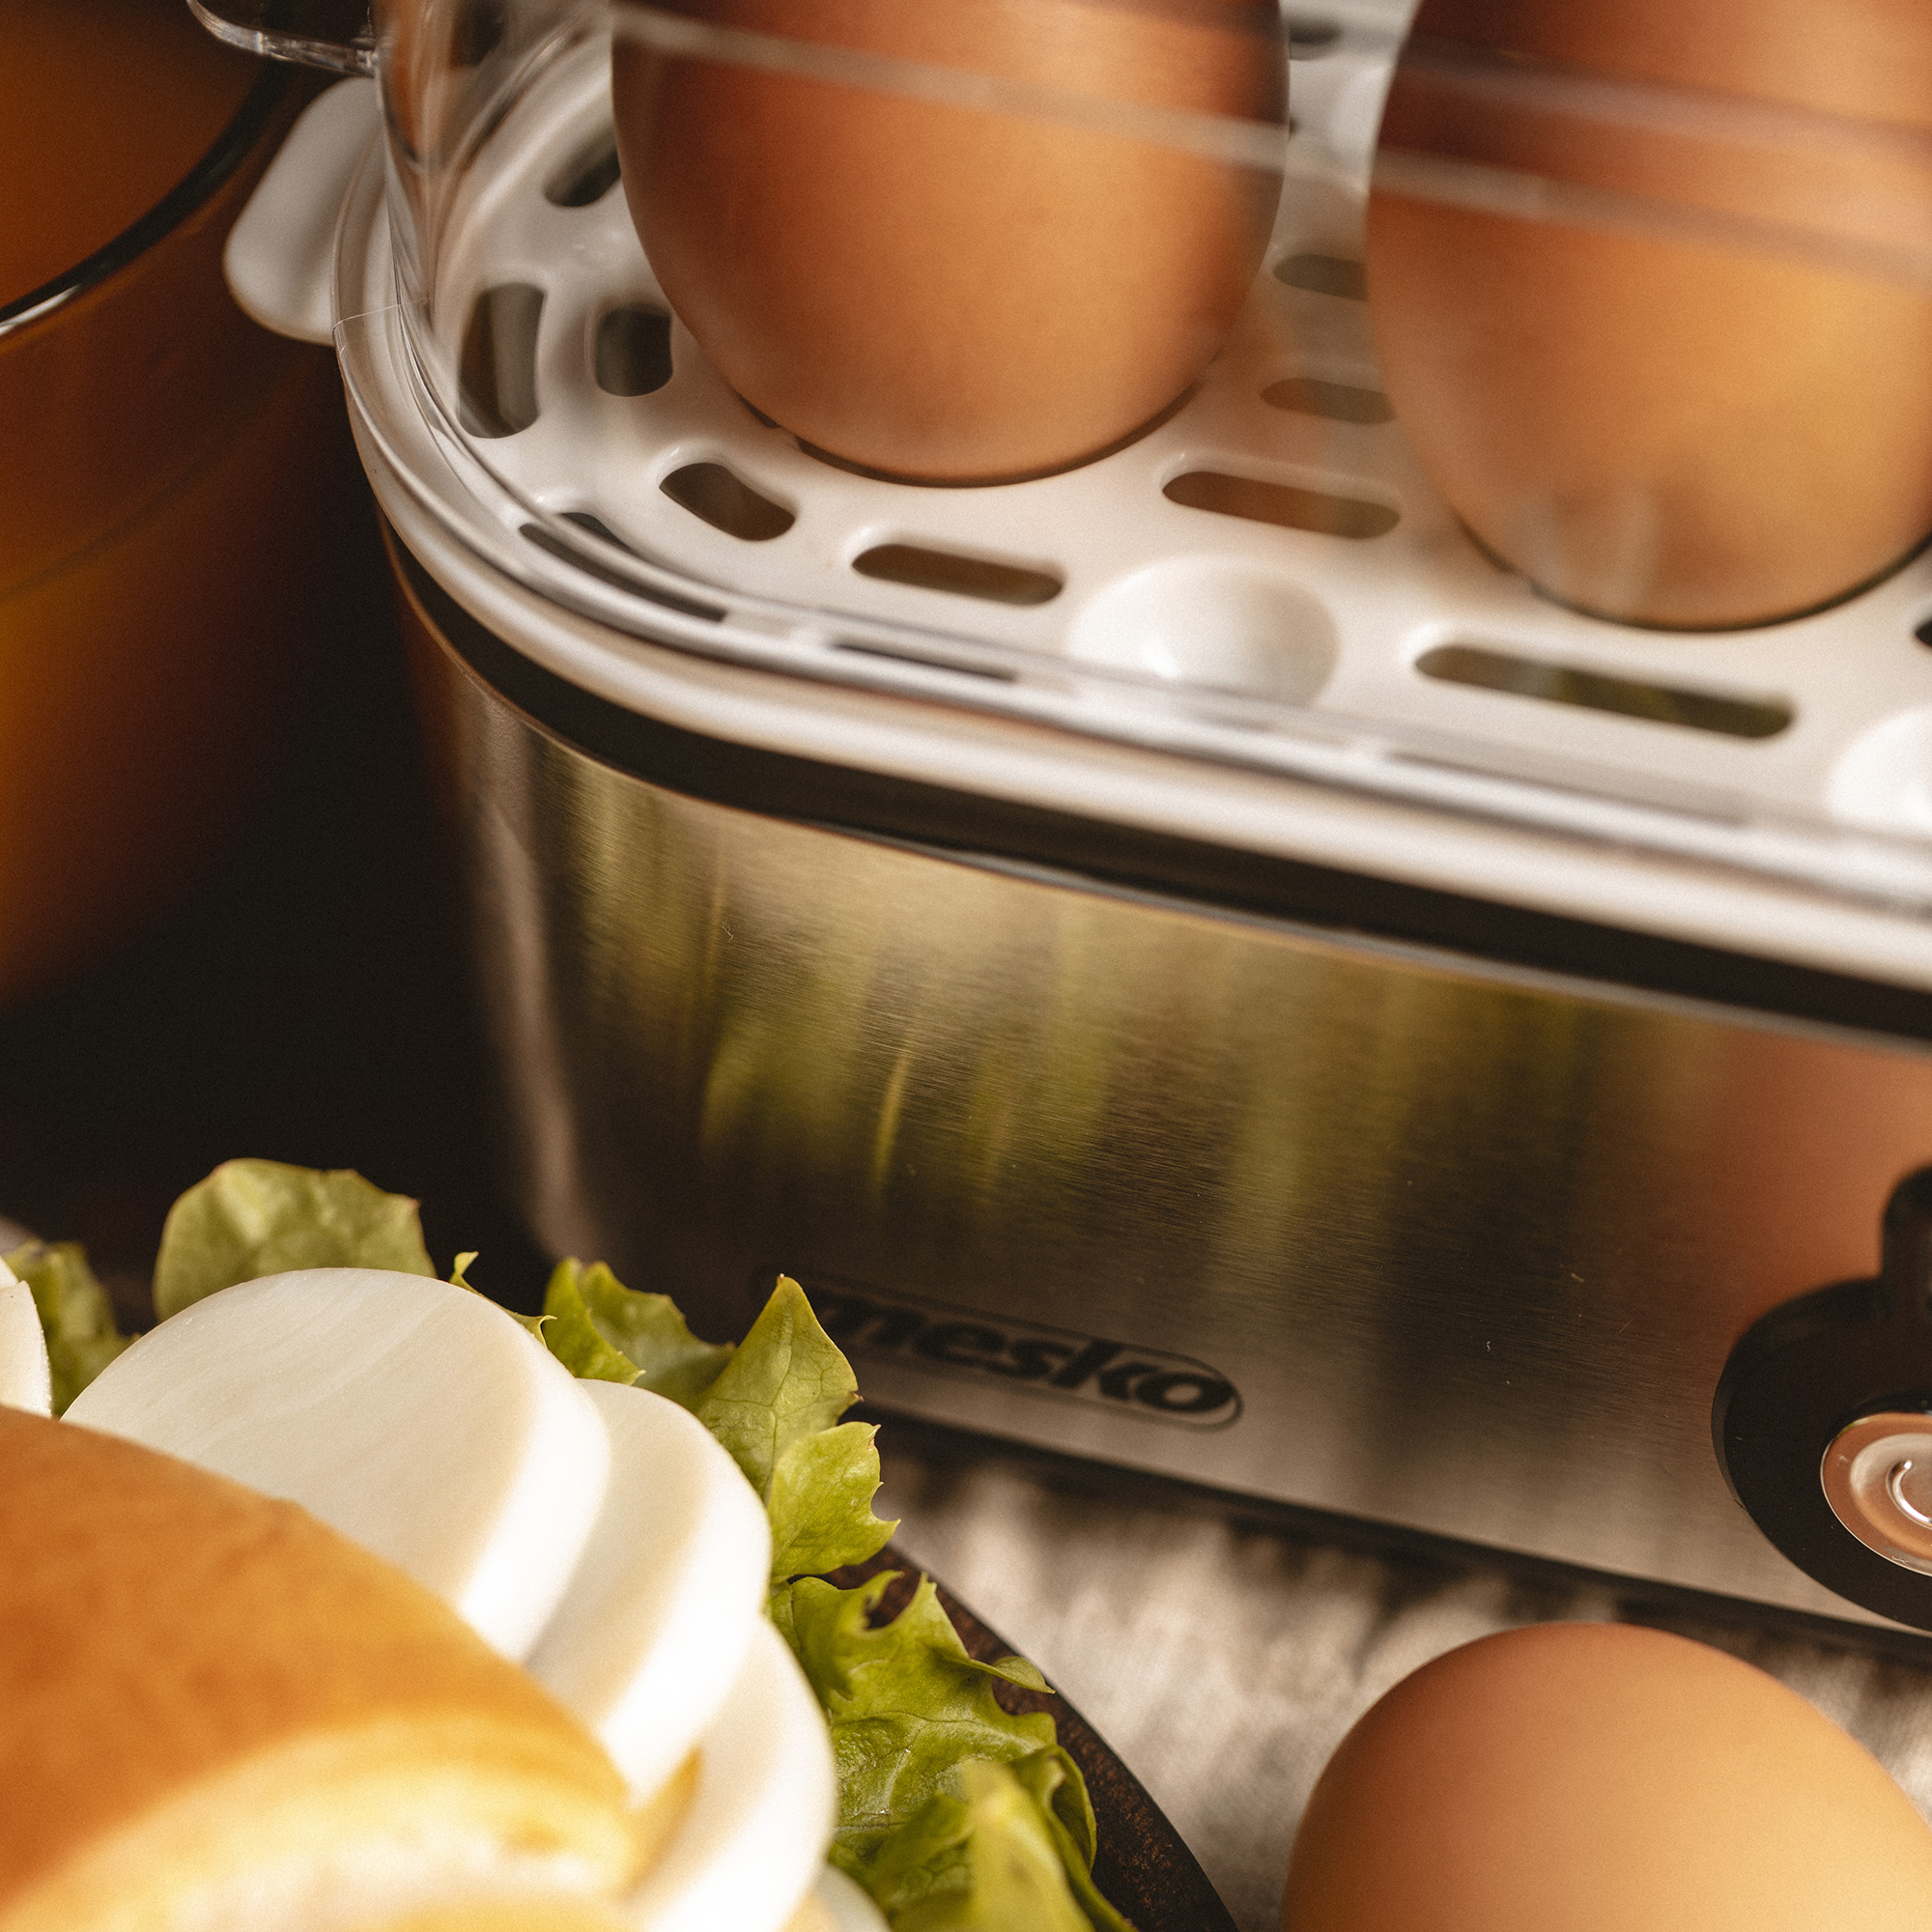 MESKO MS-4485 Cuece Huevos Eléctrico para 3 Huevos, Acero Inoxidable, Protección por Sobre Calentamiento, 350W, Libre de BPA